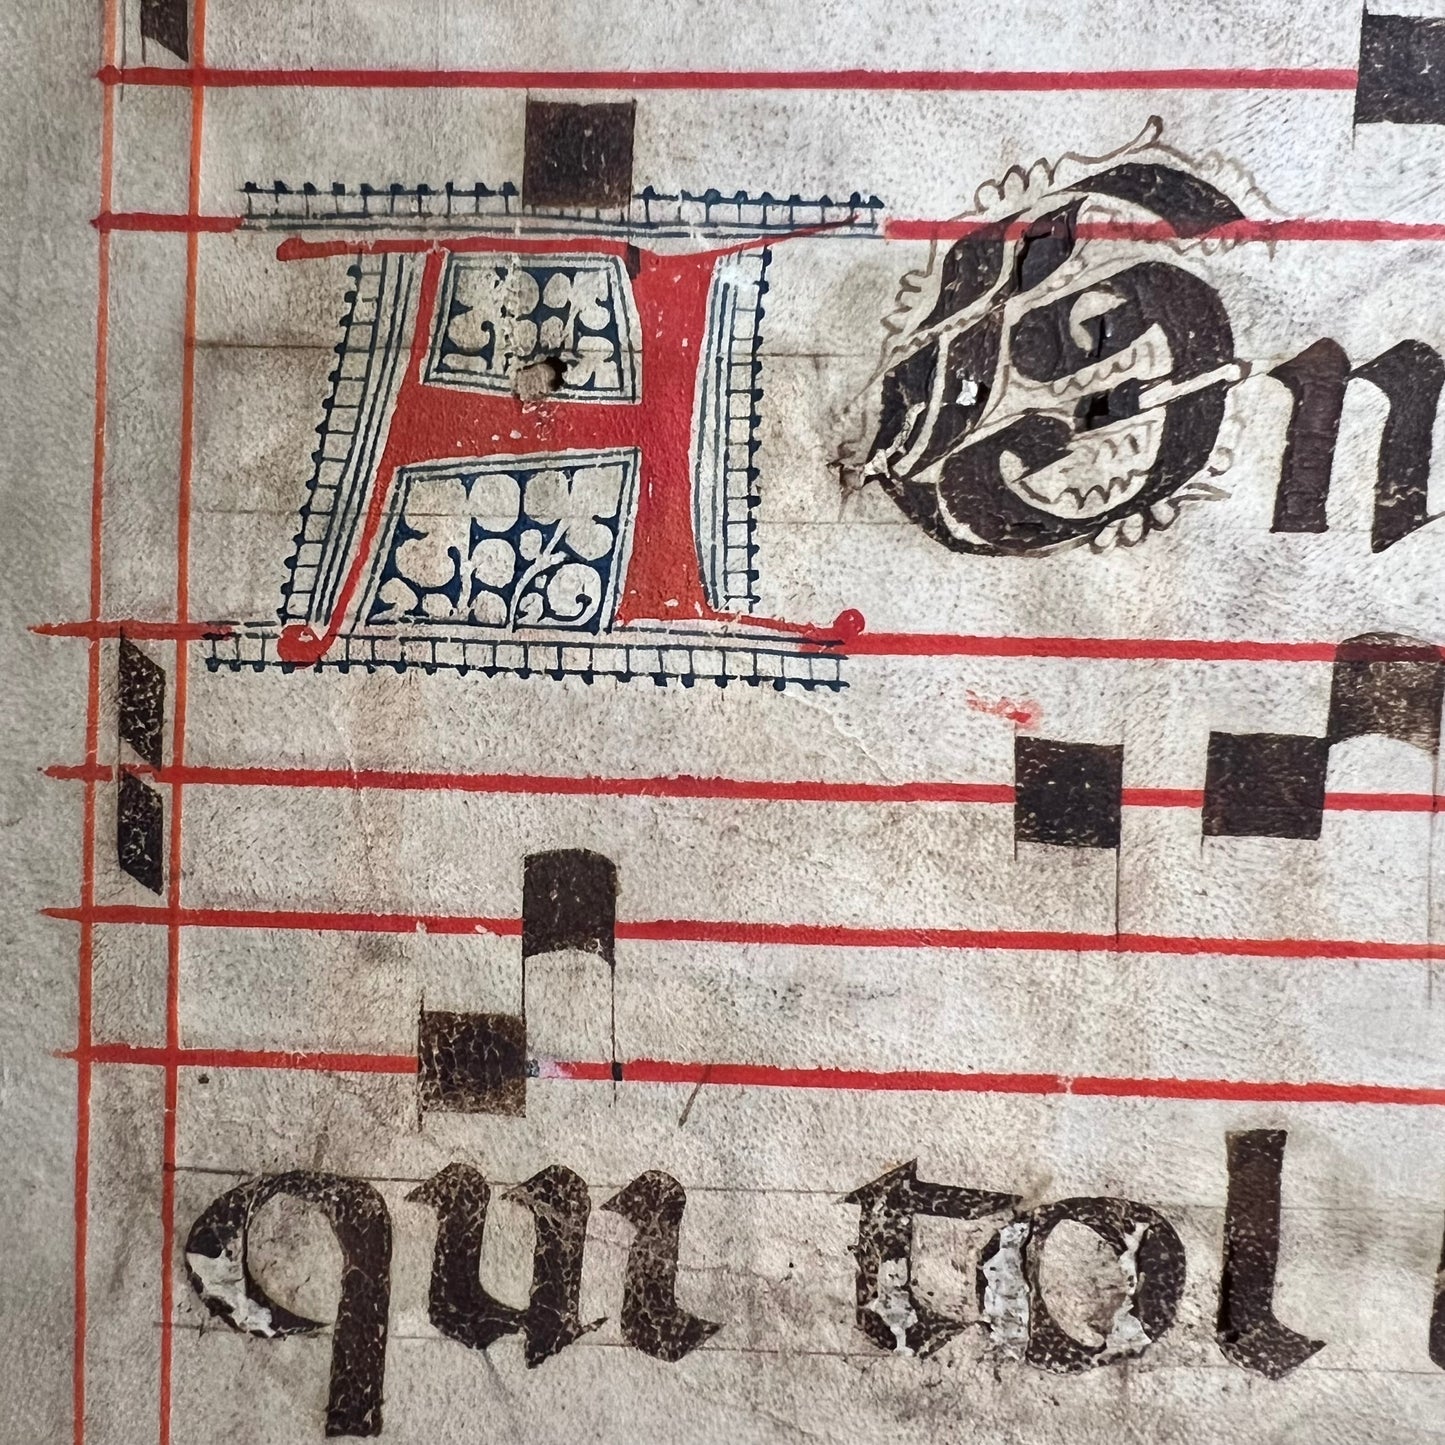 Rare Medieval Illuminated Manuscript c.1440